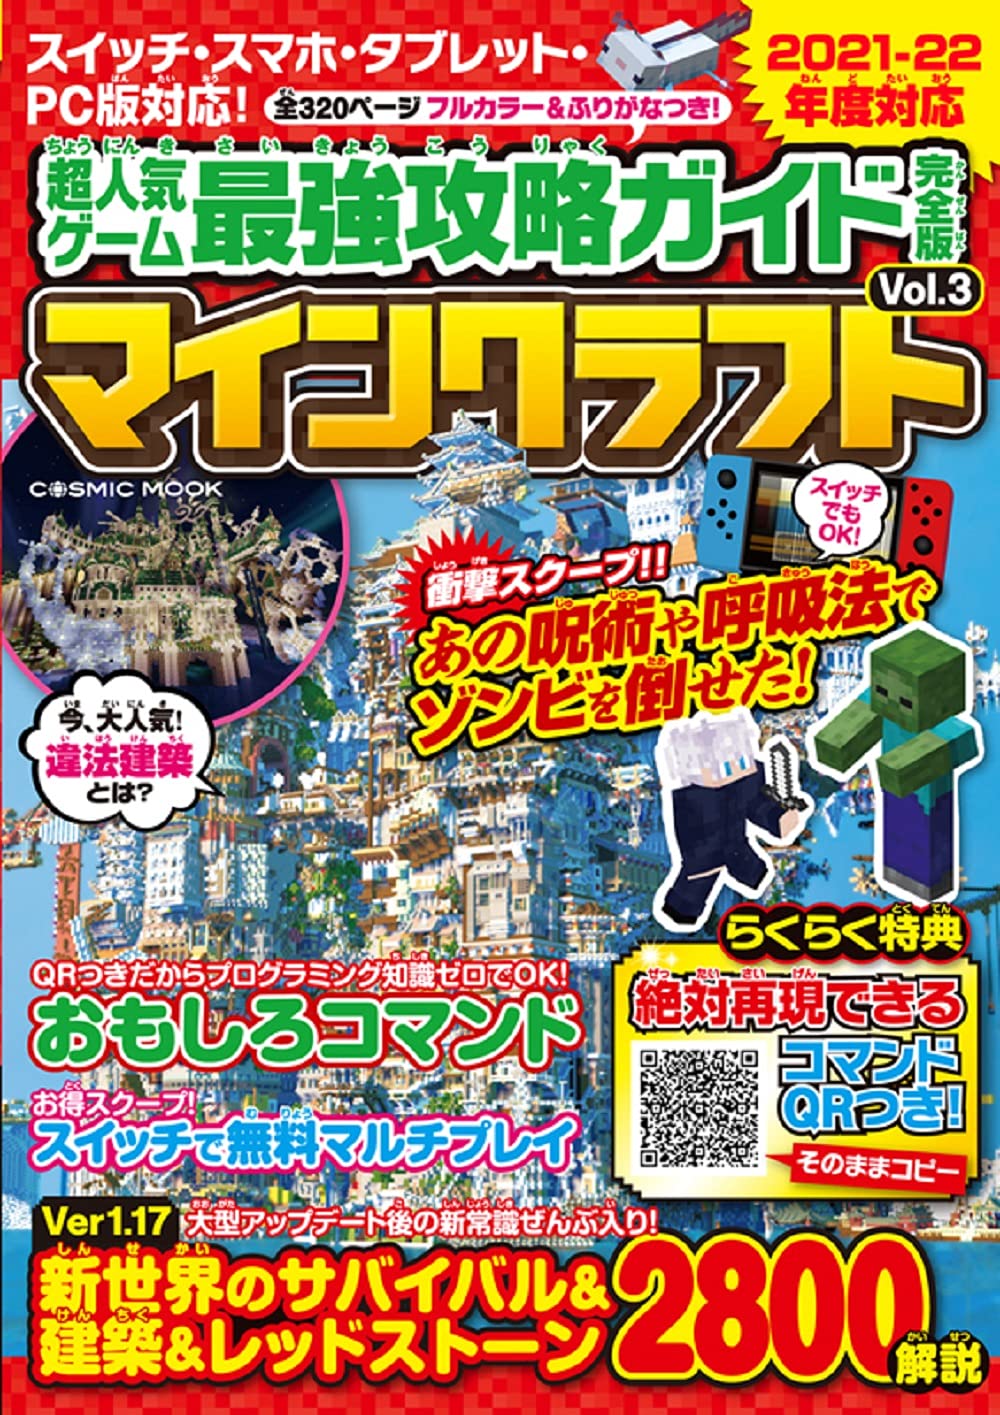 超人氣ゲ-ム最强攻略ガイド完全版Vol.3 (COSMIC MOOK)